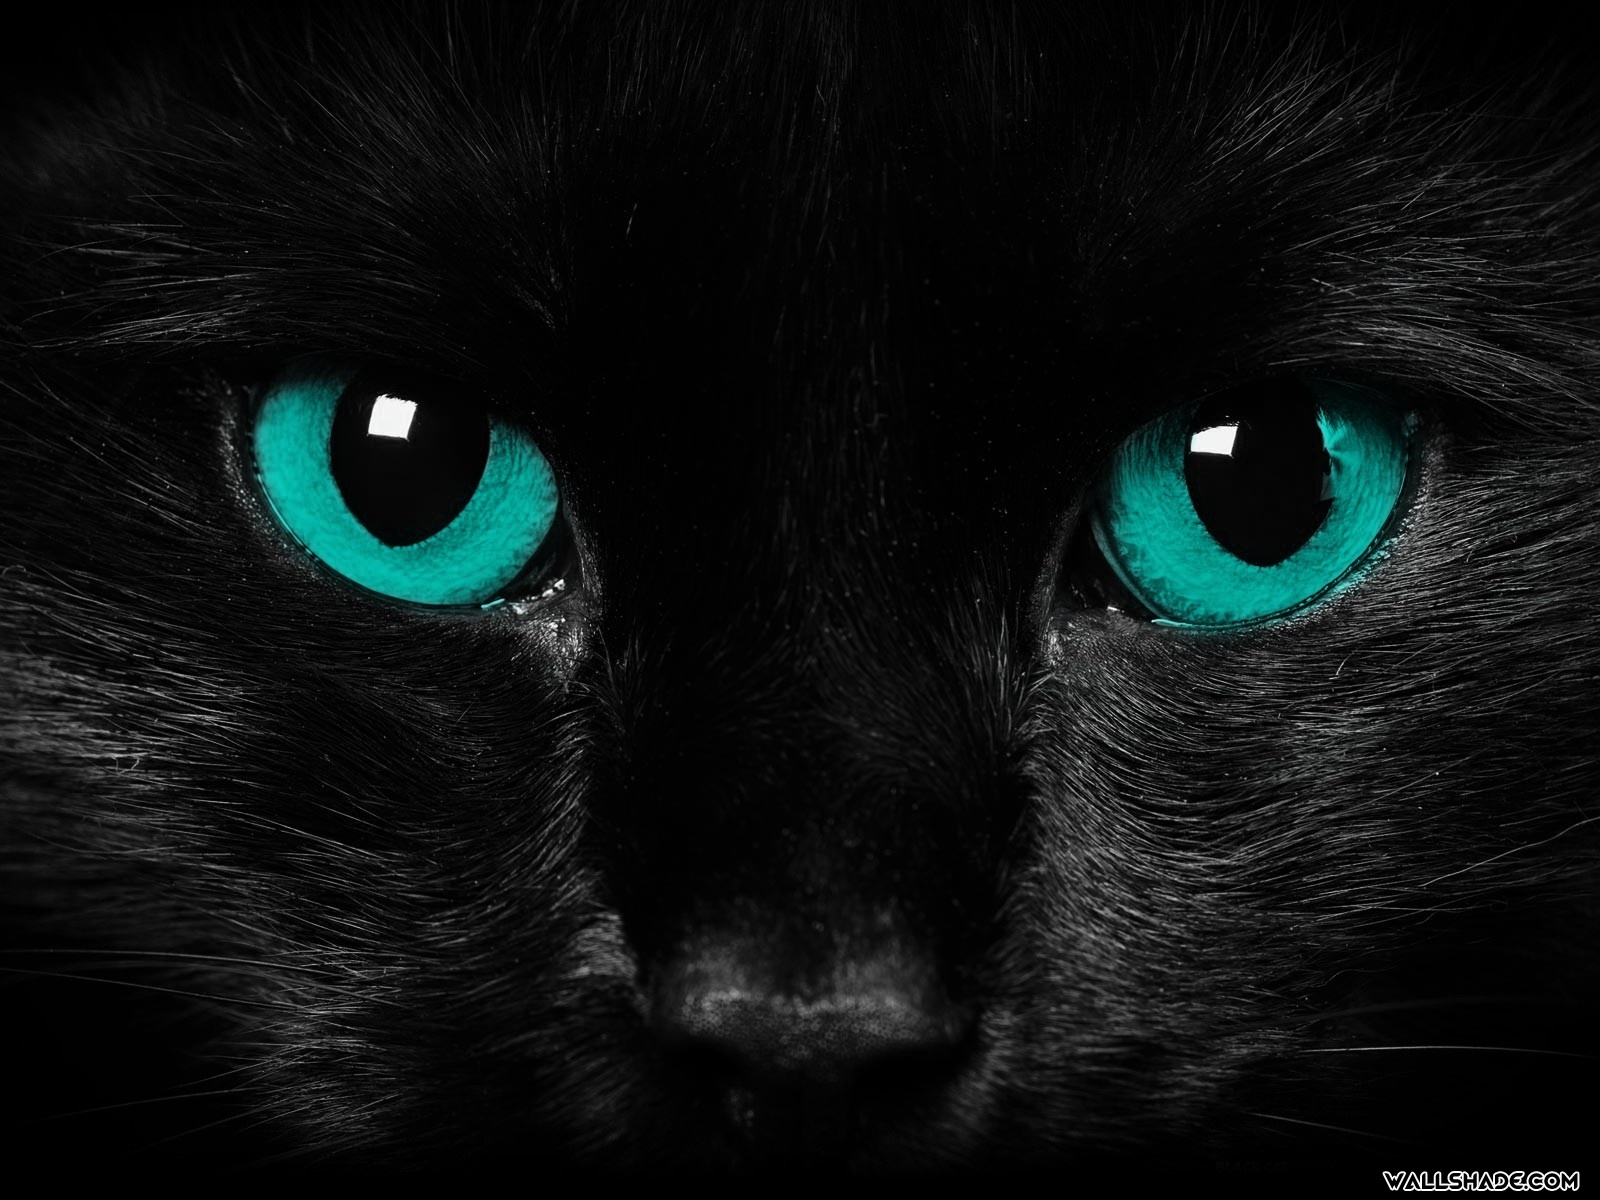 Scary cat eyes